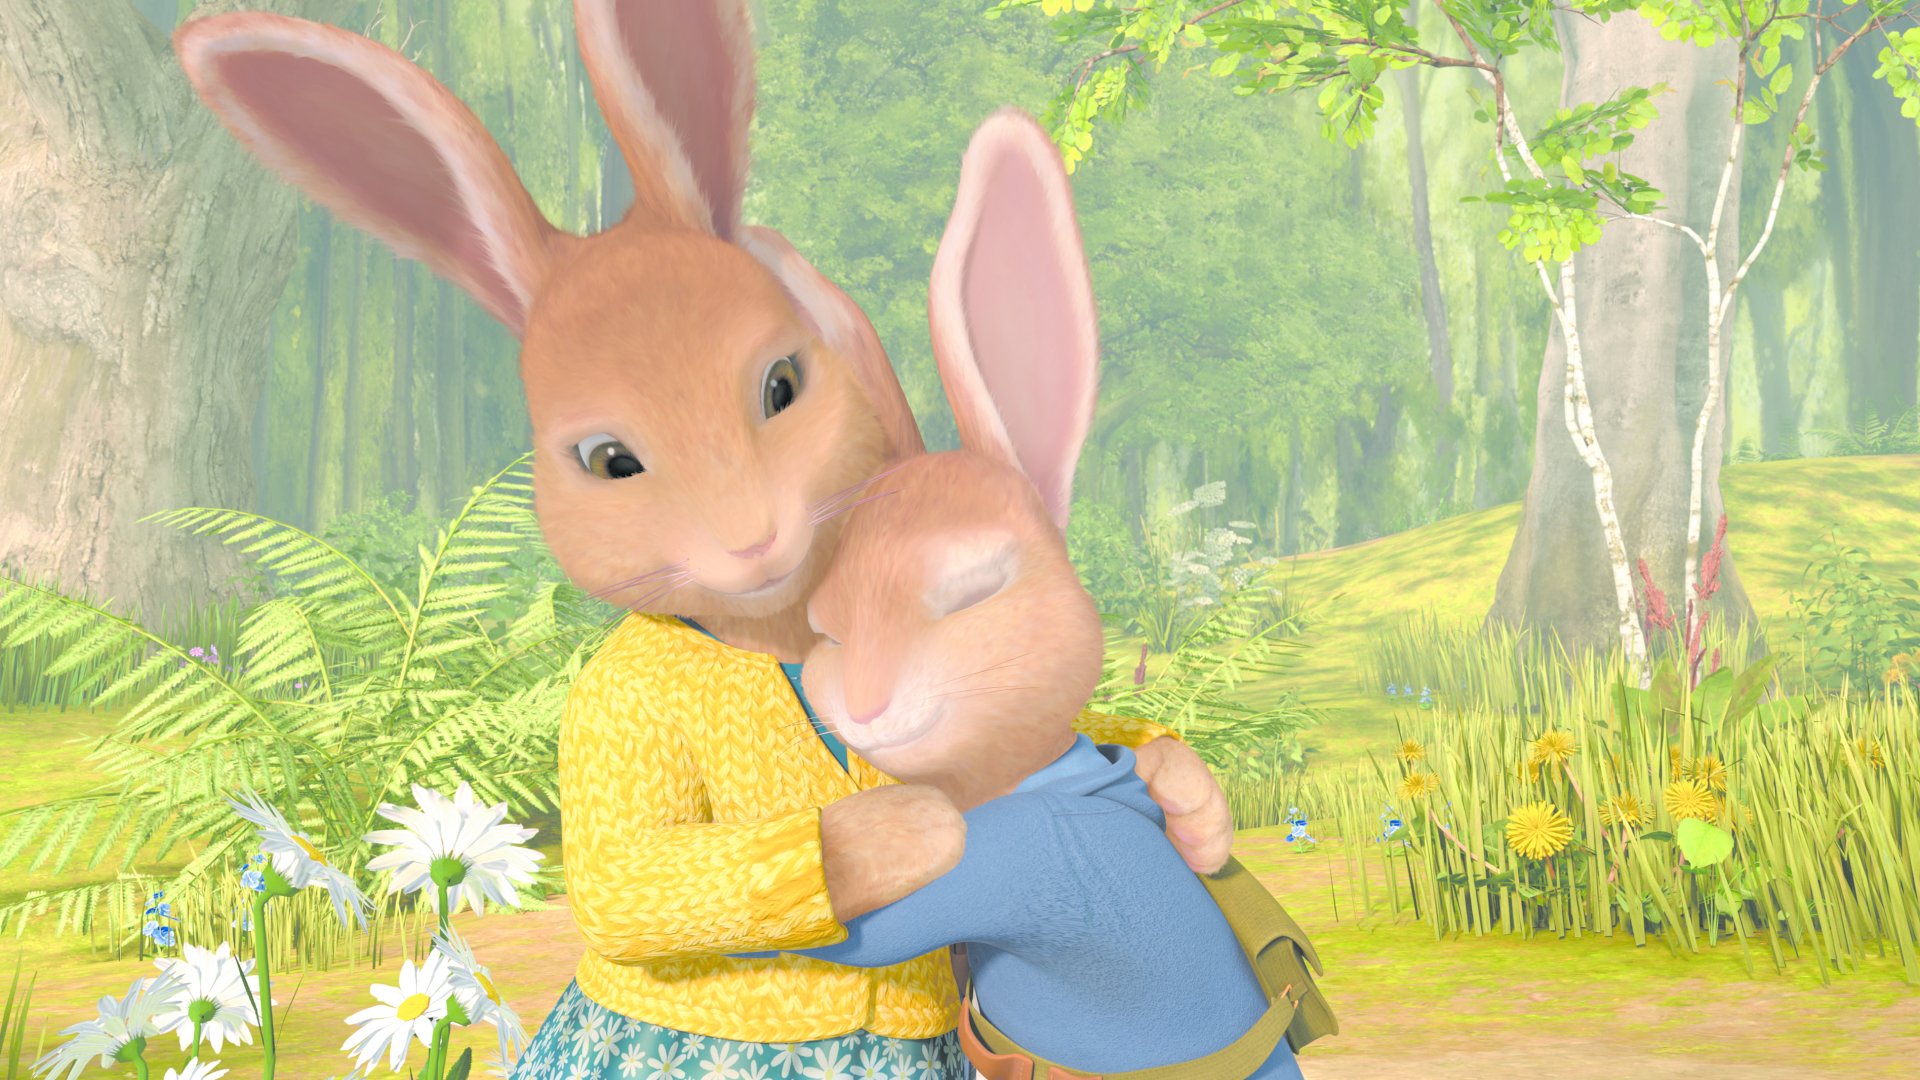 Watch Peter Rabbit Season 2 Episode 24 Online - Stream Full Episodes